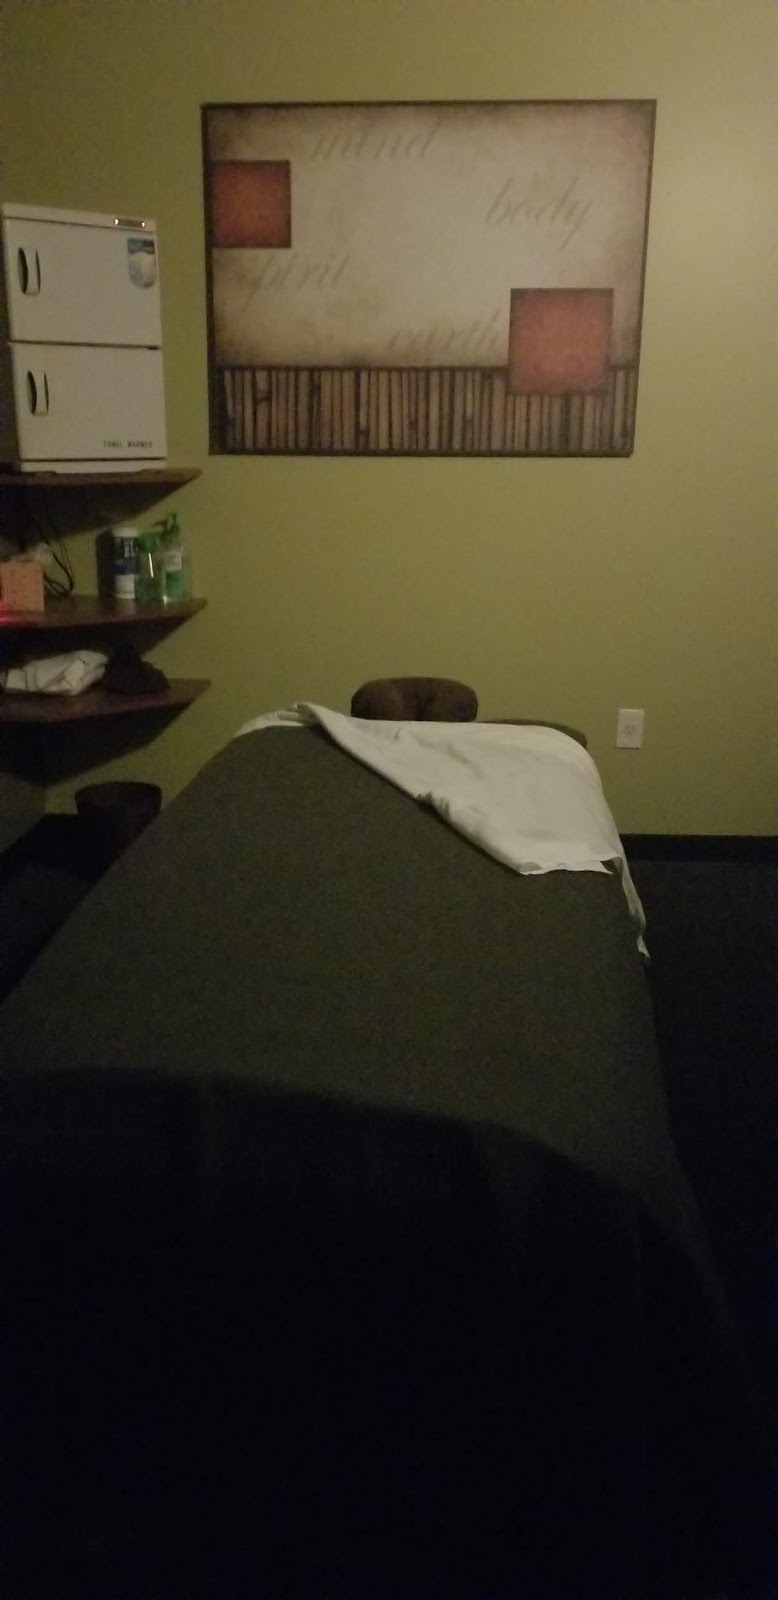 Massage Green SPA | 29466 W Seven Mile Rd, Livonia, MI 48152, USA | Phone: (248) 987-7334